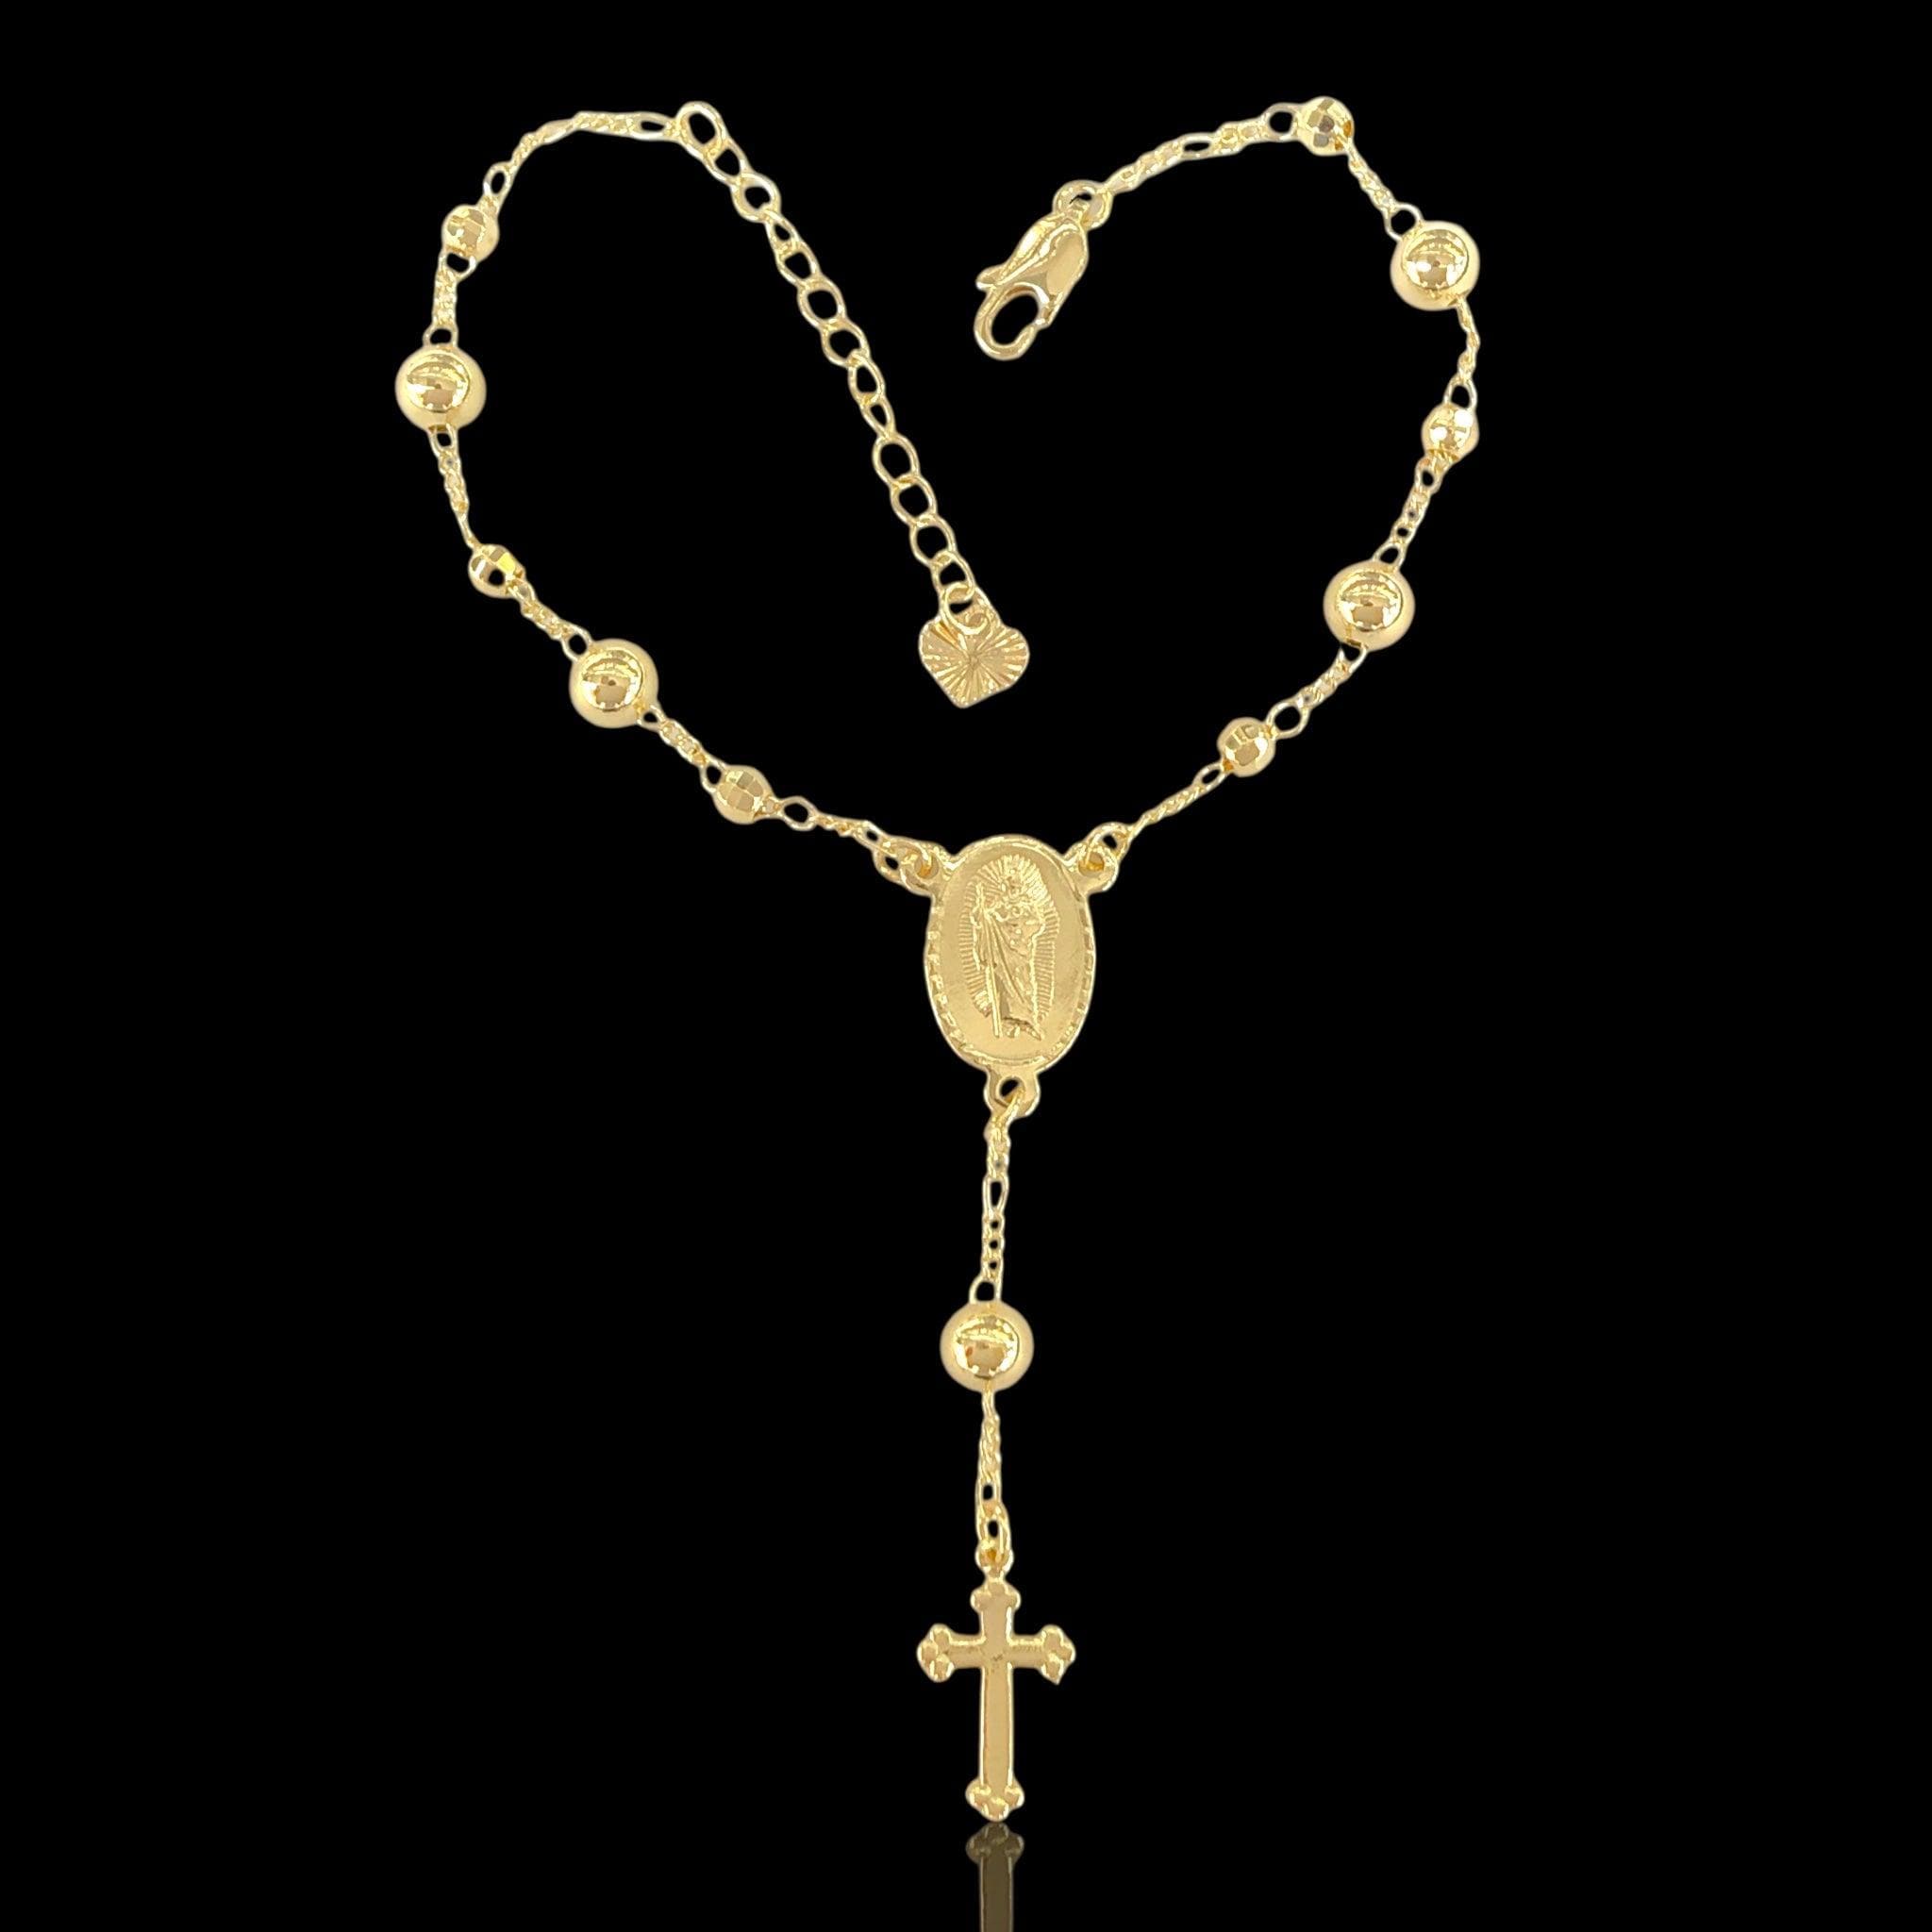 18k Gold-filled Rosary Bracelet- kuania oro laminado